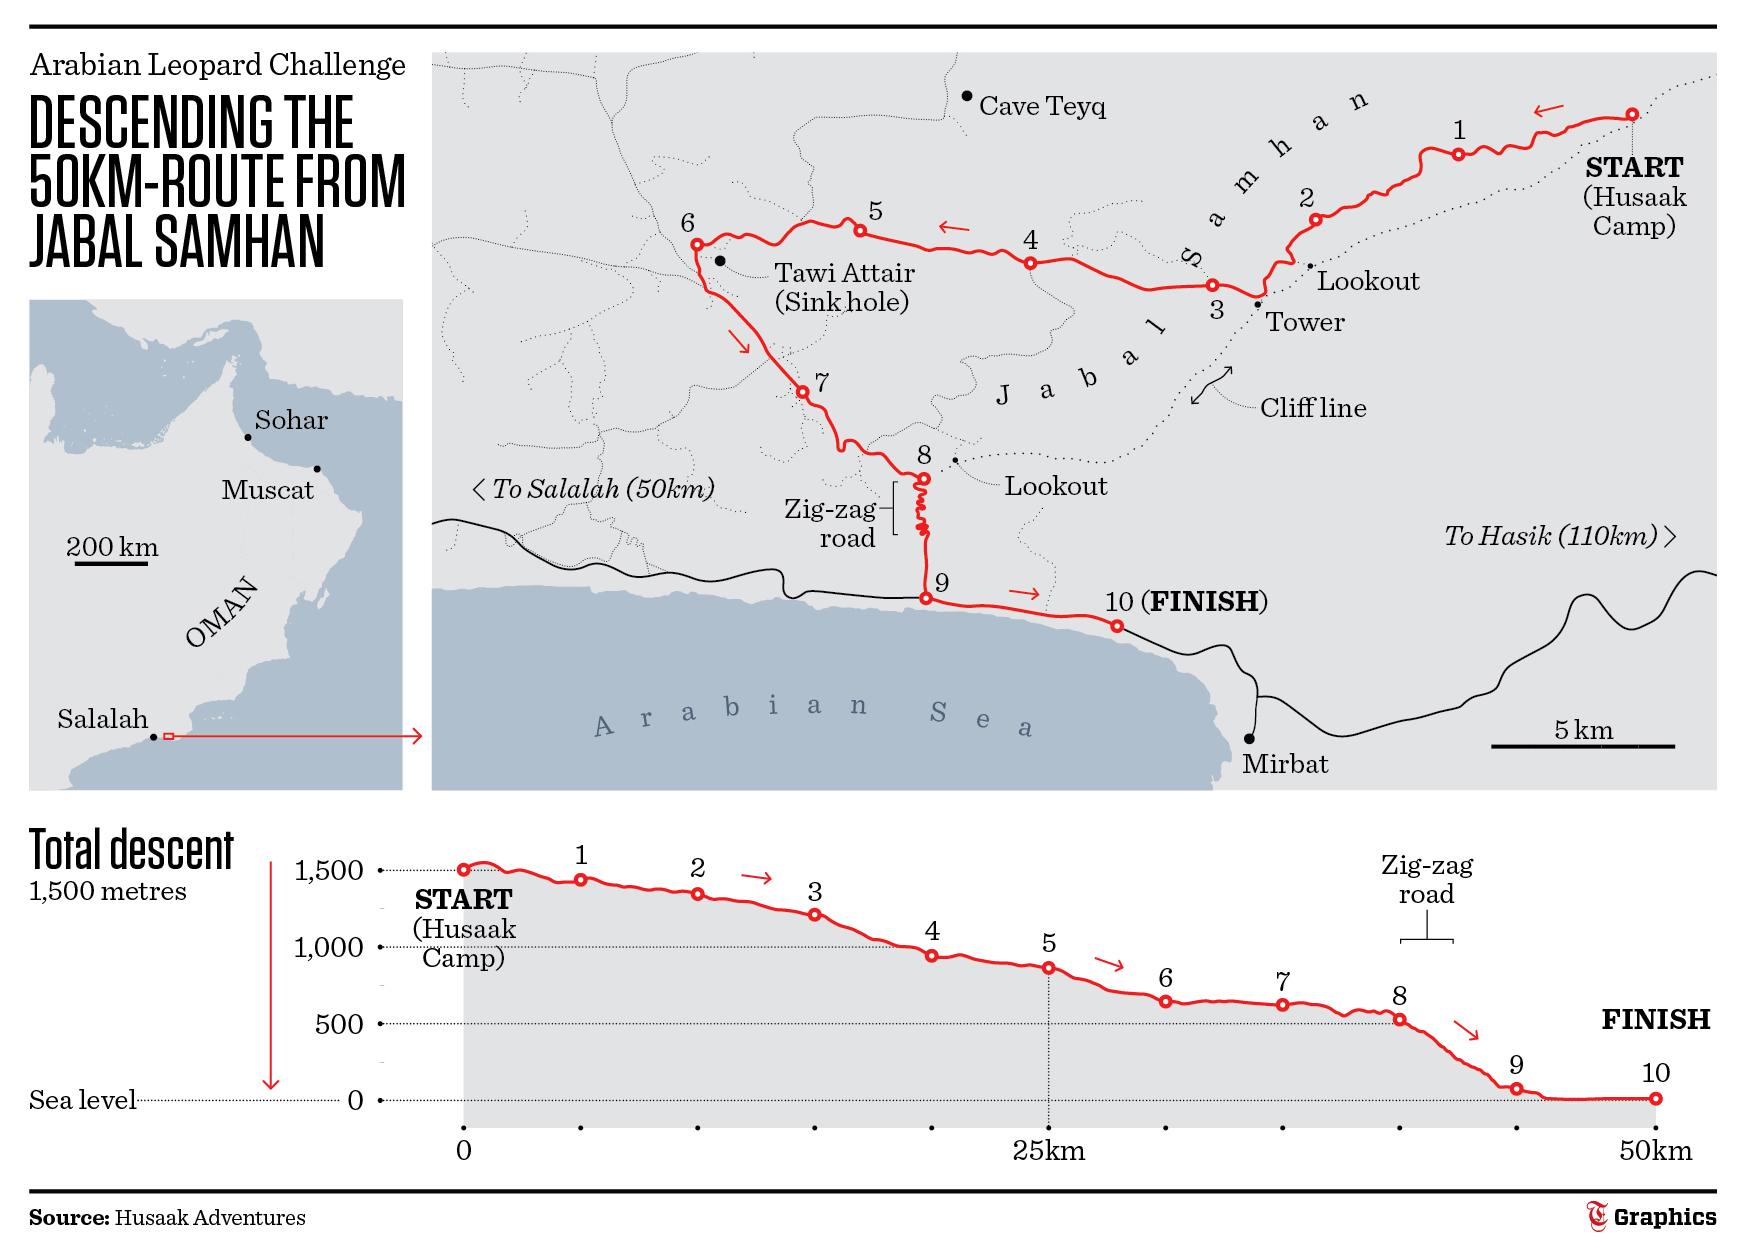 Arabian Leopard trail run begins in Oman